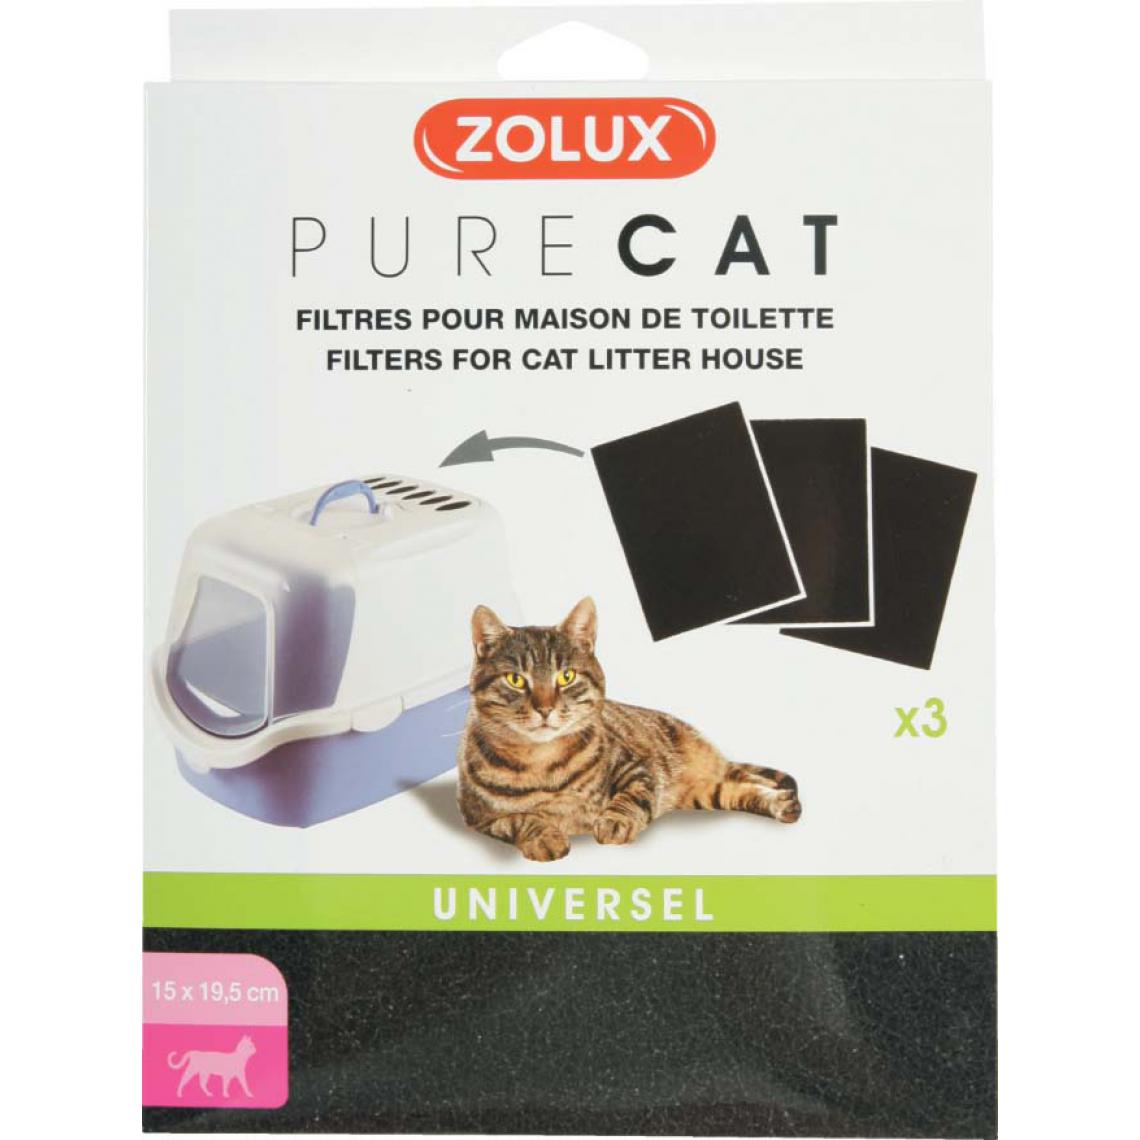 Zolux - 3 filtres pour maison de toilette Pure cat - Litière pour chat